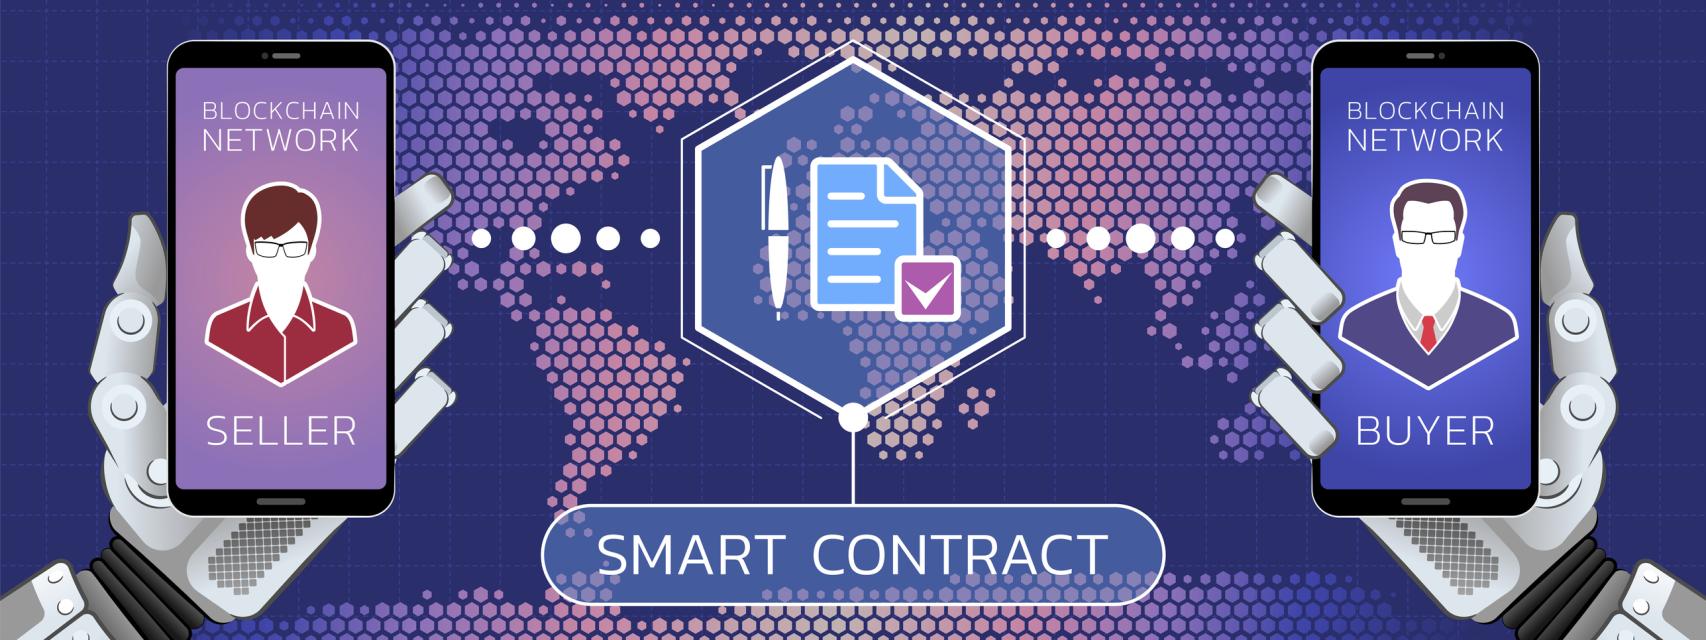 ¿Qué son los contratos inteligentes o smart contracts?